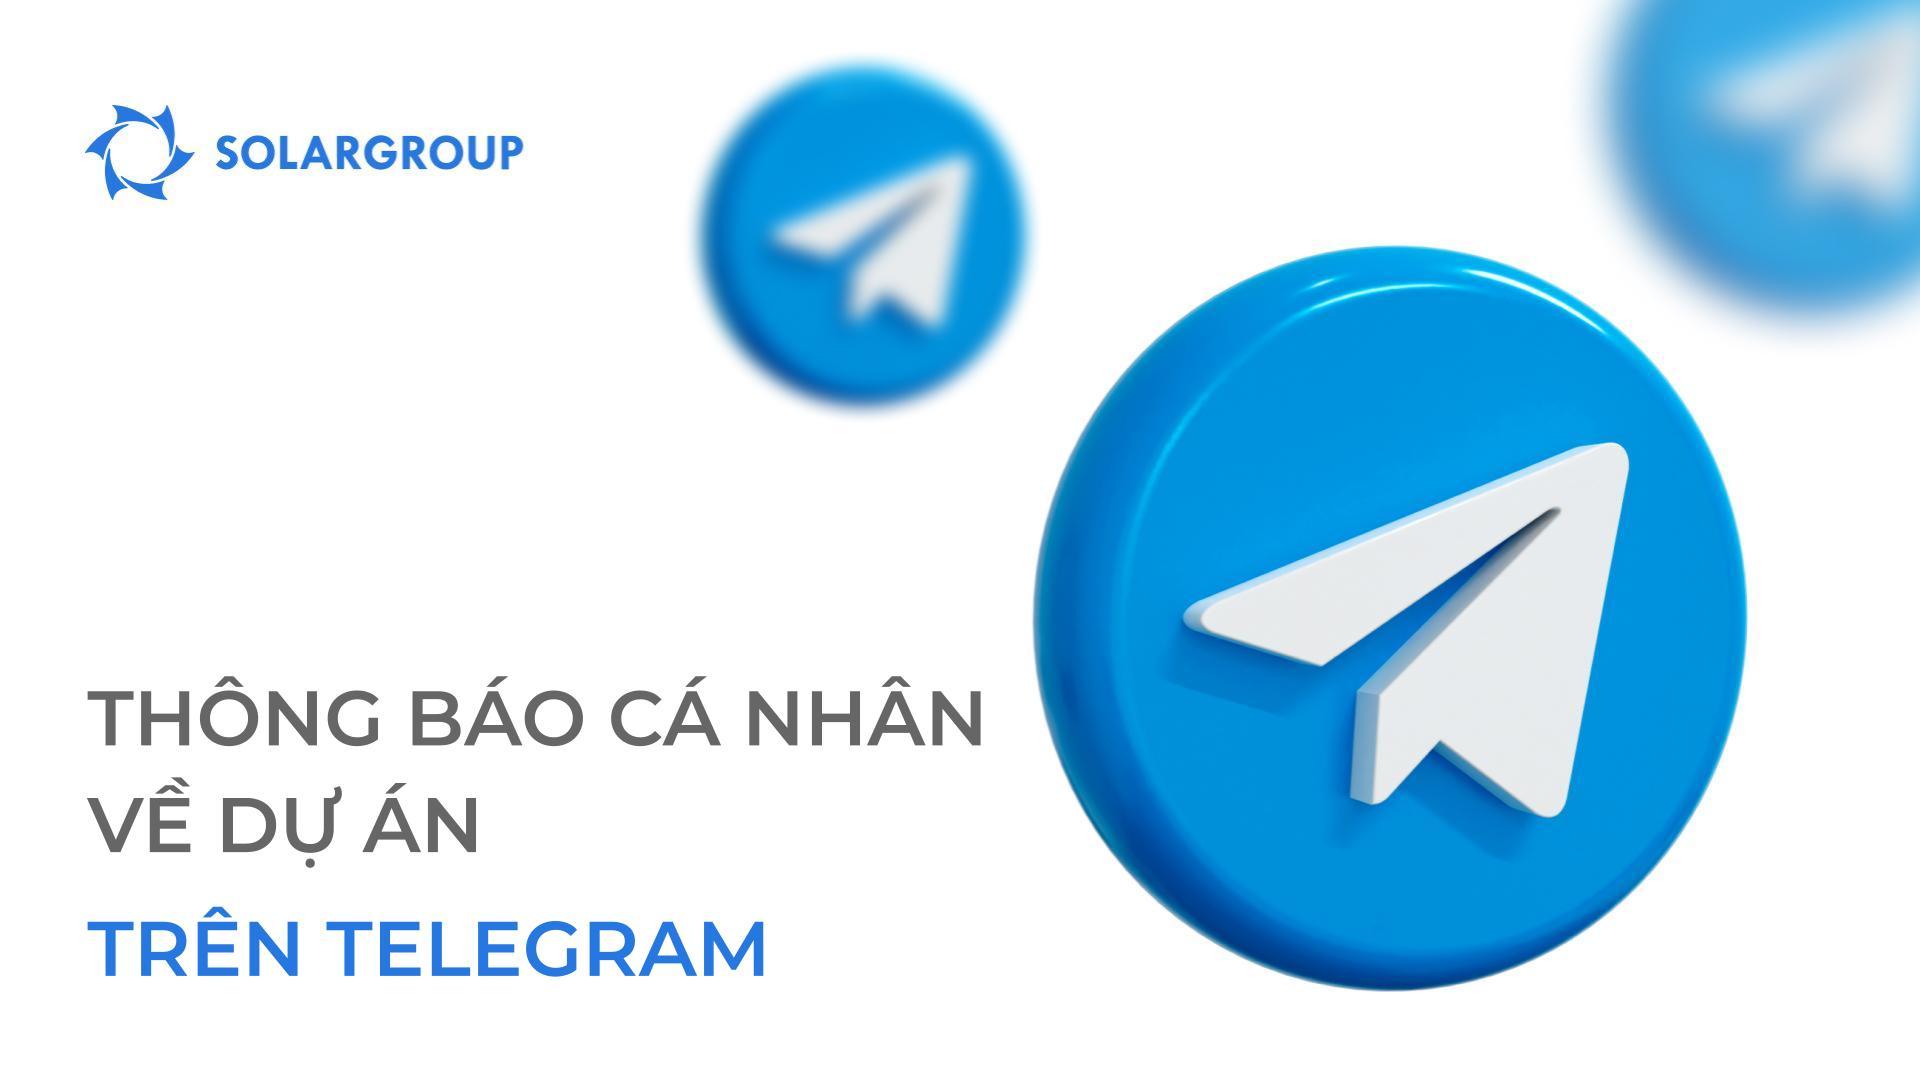 Nhận thông báo trên Telegram về những điều quan trọng nhất đối với bạn trong dự án